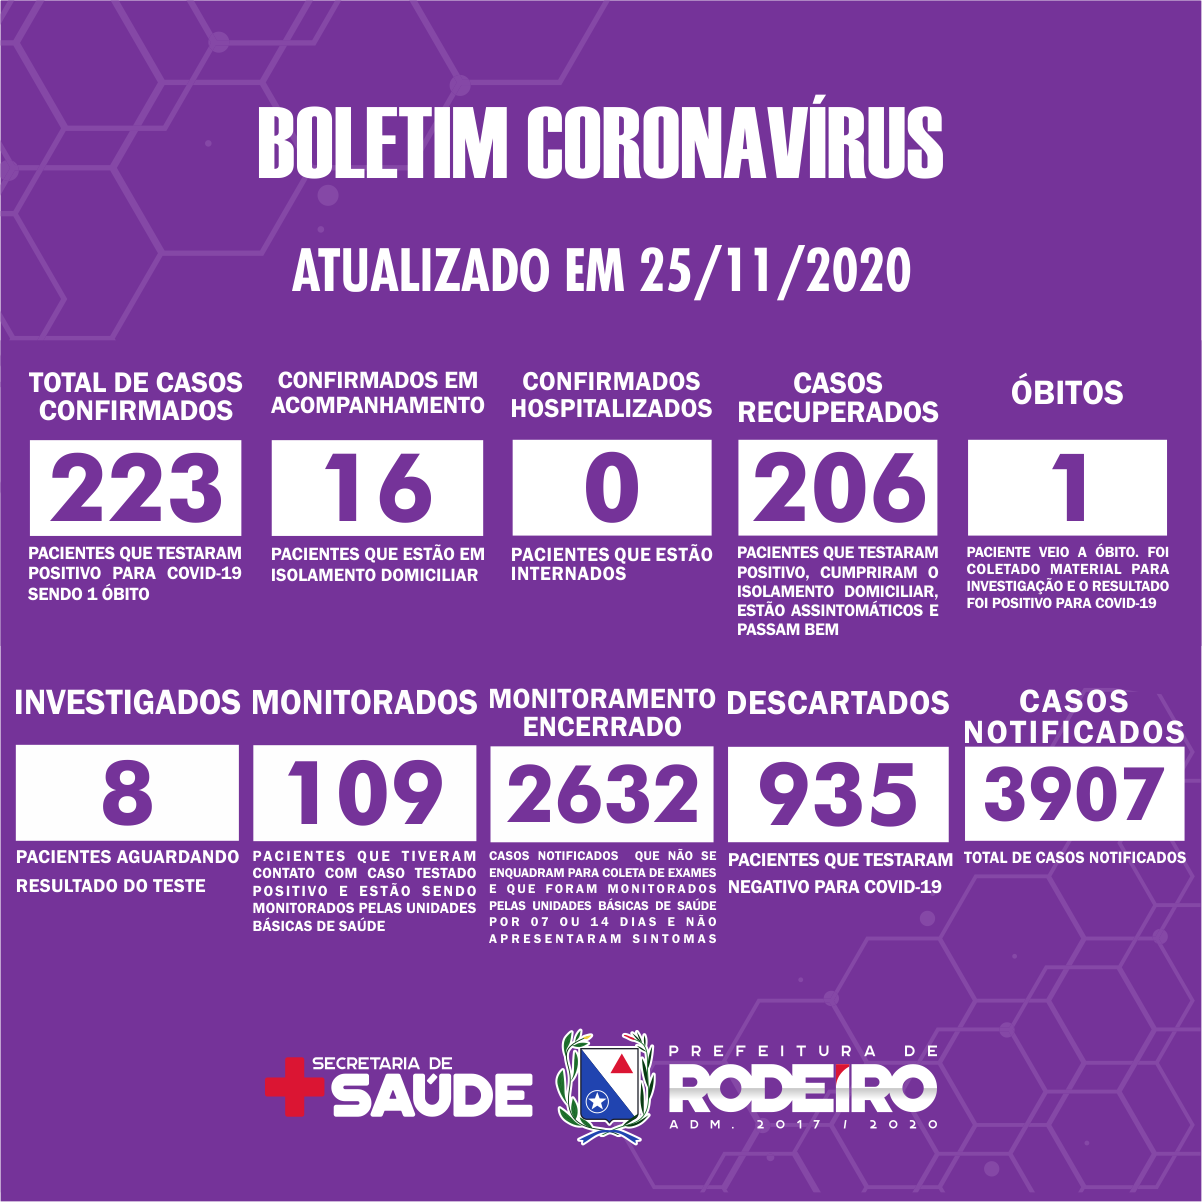 Boletim Epidemiológico do Município de Rodeiro sobre coronavírus, atualizado em 25/11/2020